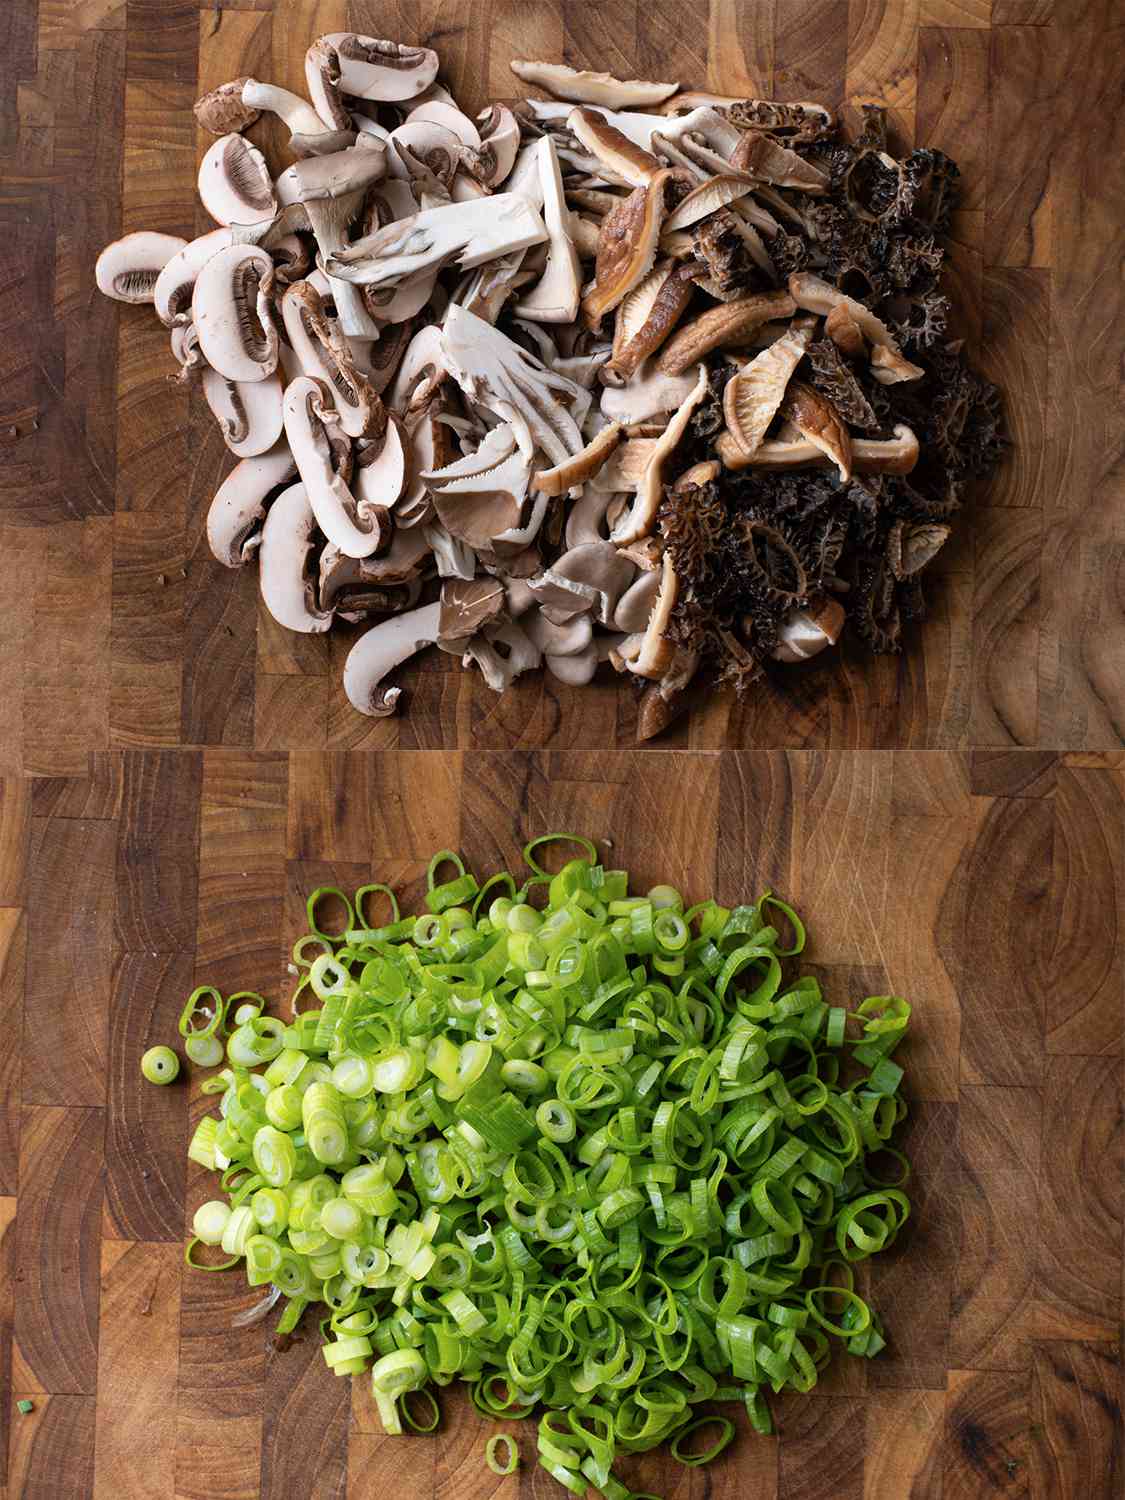 两个影像拼贴。上图显示了木砧板切新鲜的蘑菇。下面的图片显示了细切葱木砧板。